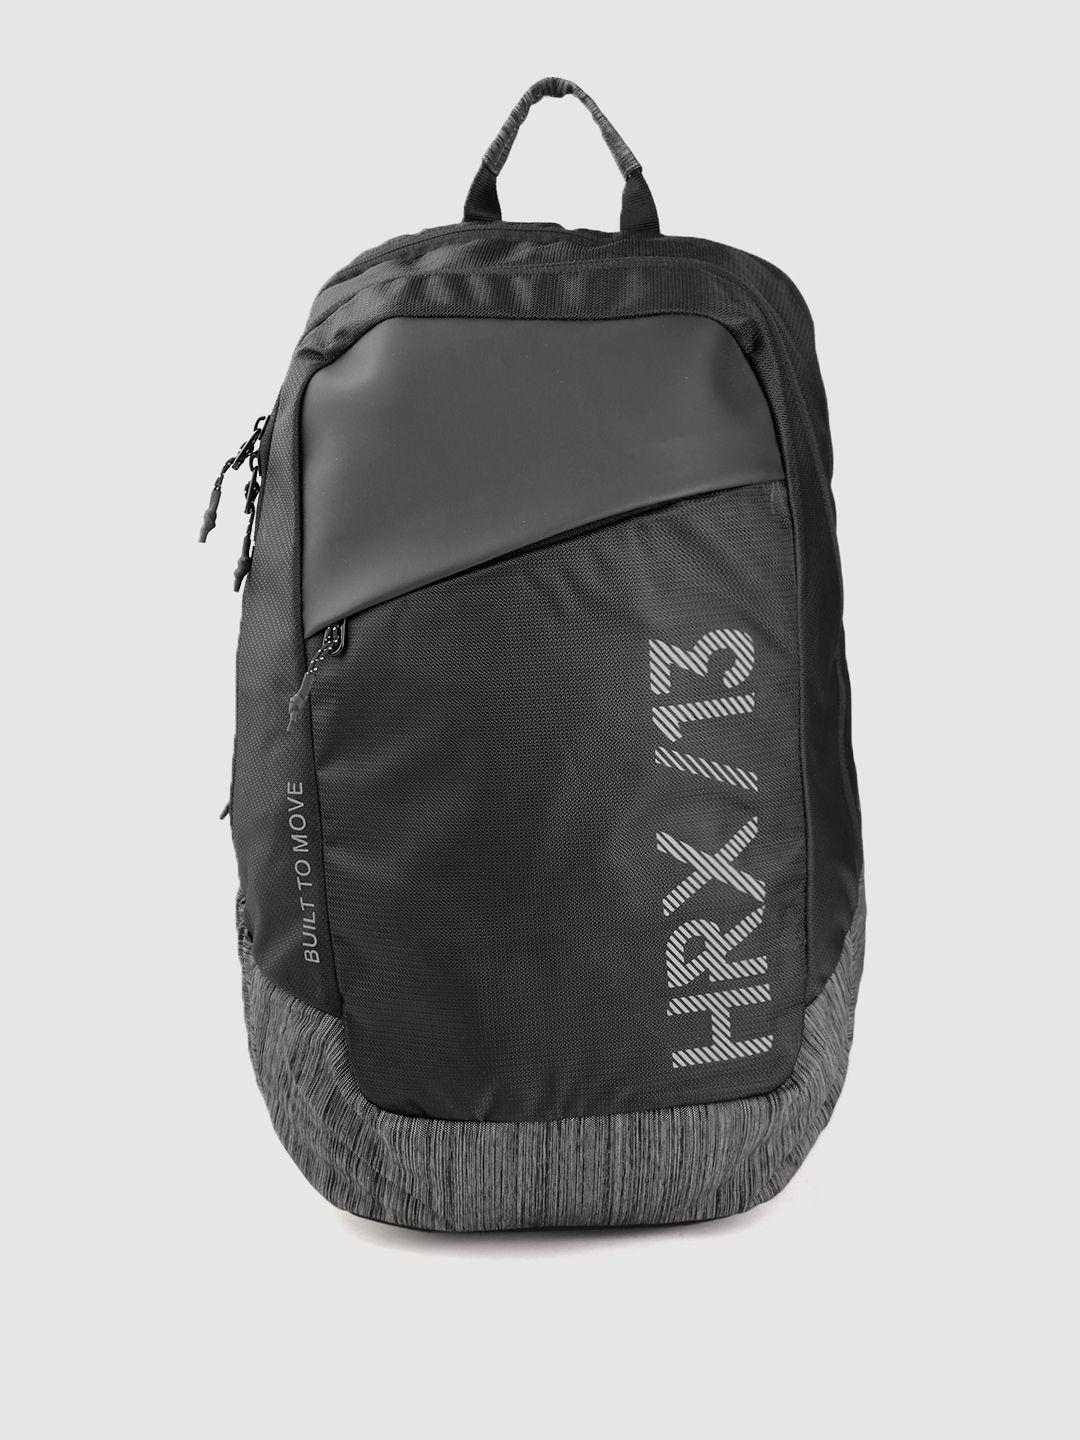 hrx-by-hrithik-roshan-unisex-black-&-grey-brand-logo-backpack-29.4-l